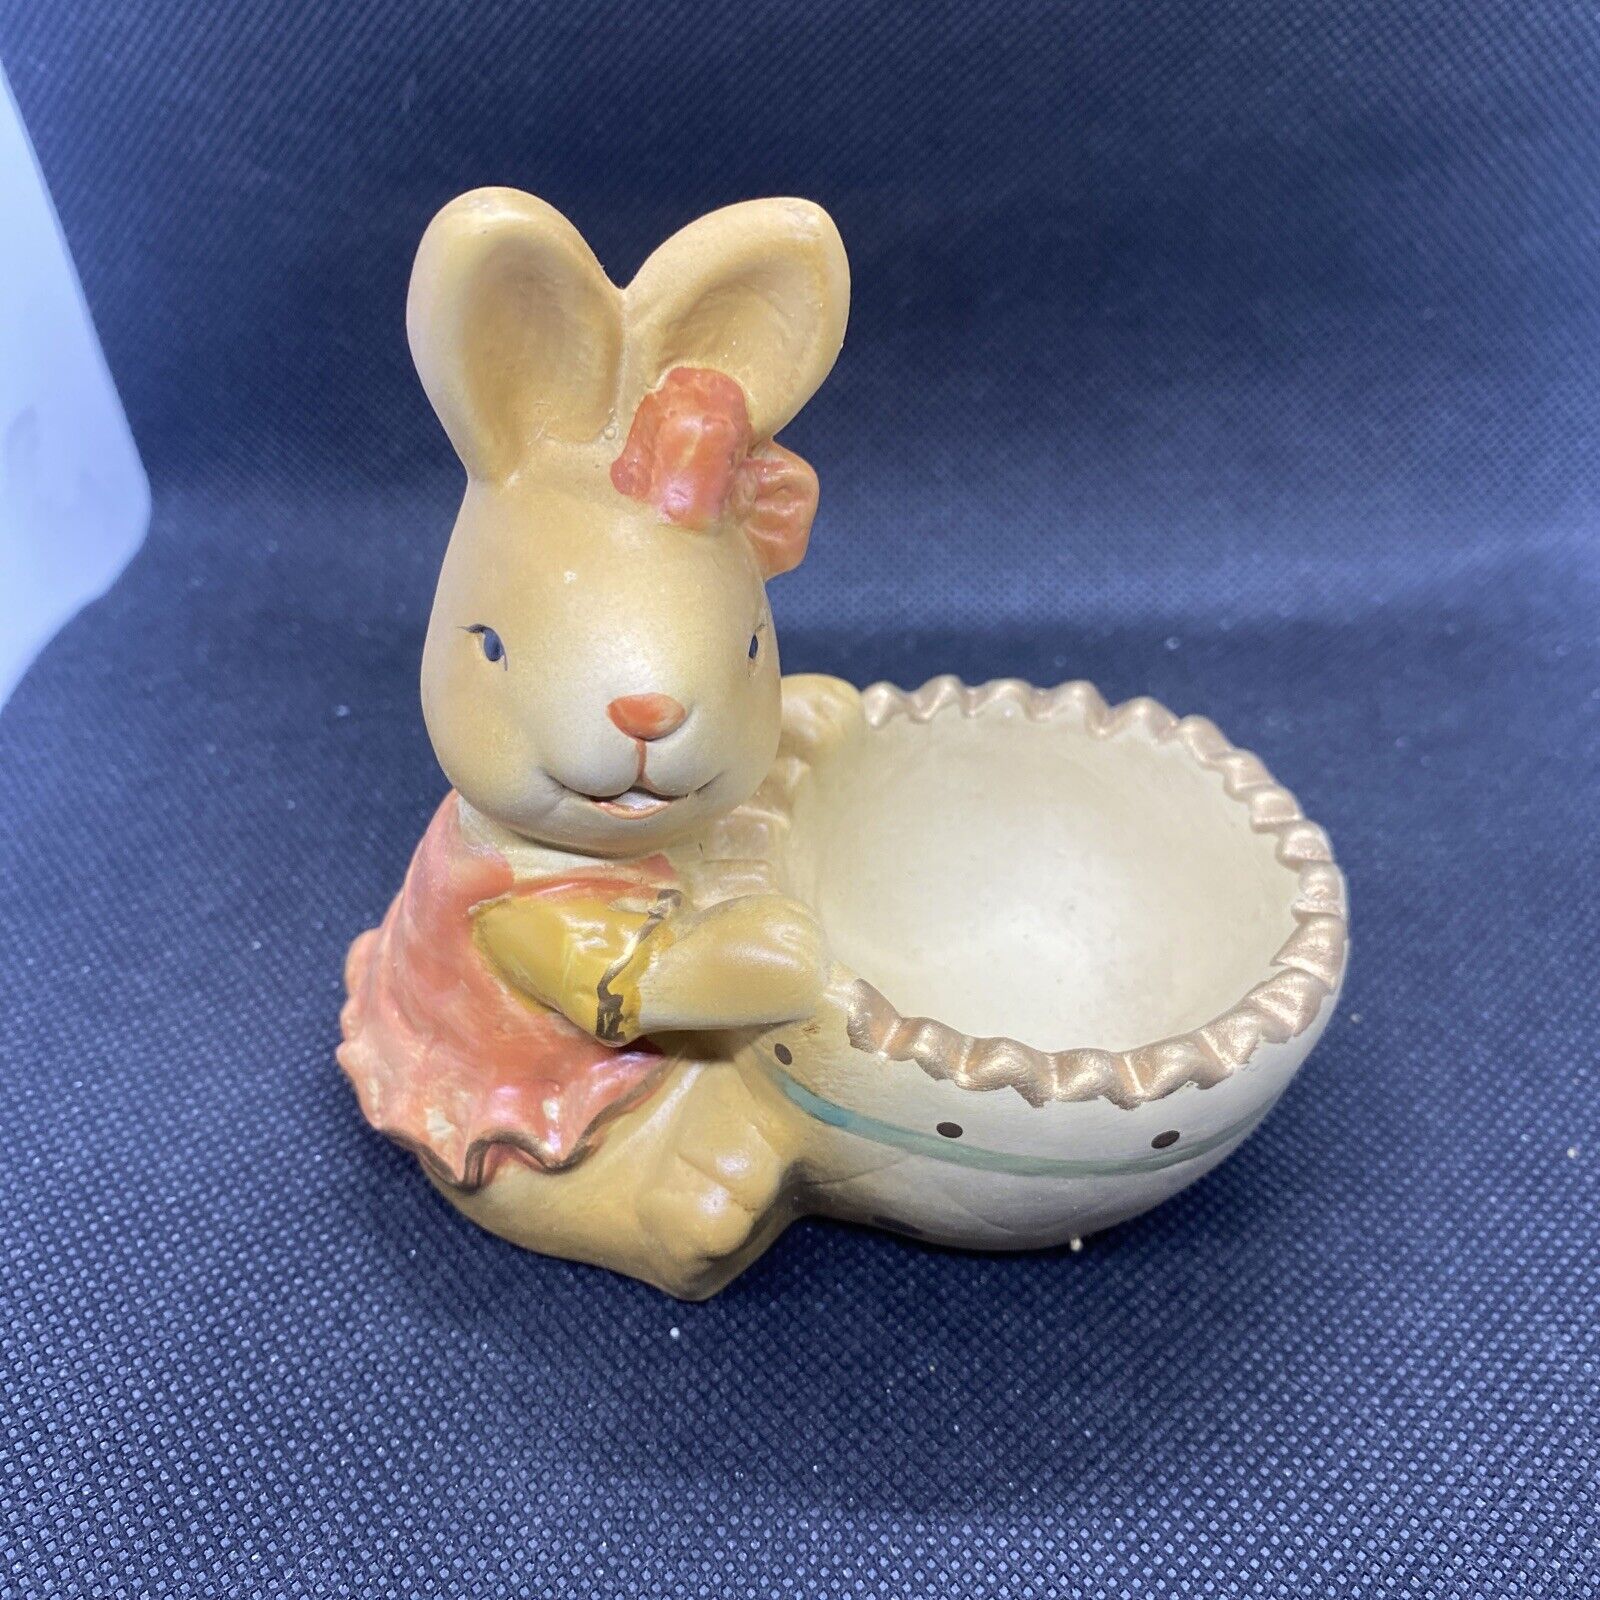 bunny egg cups vintage In Original Box